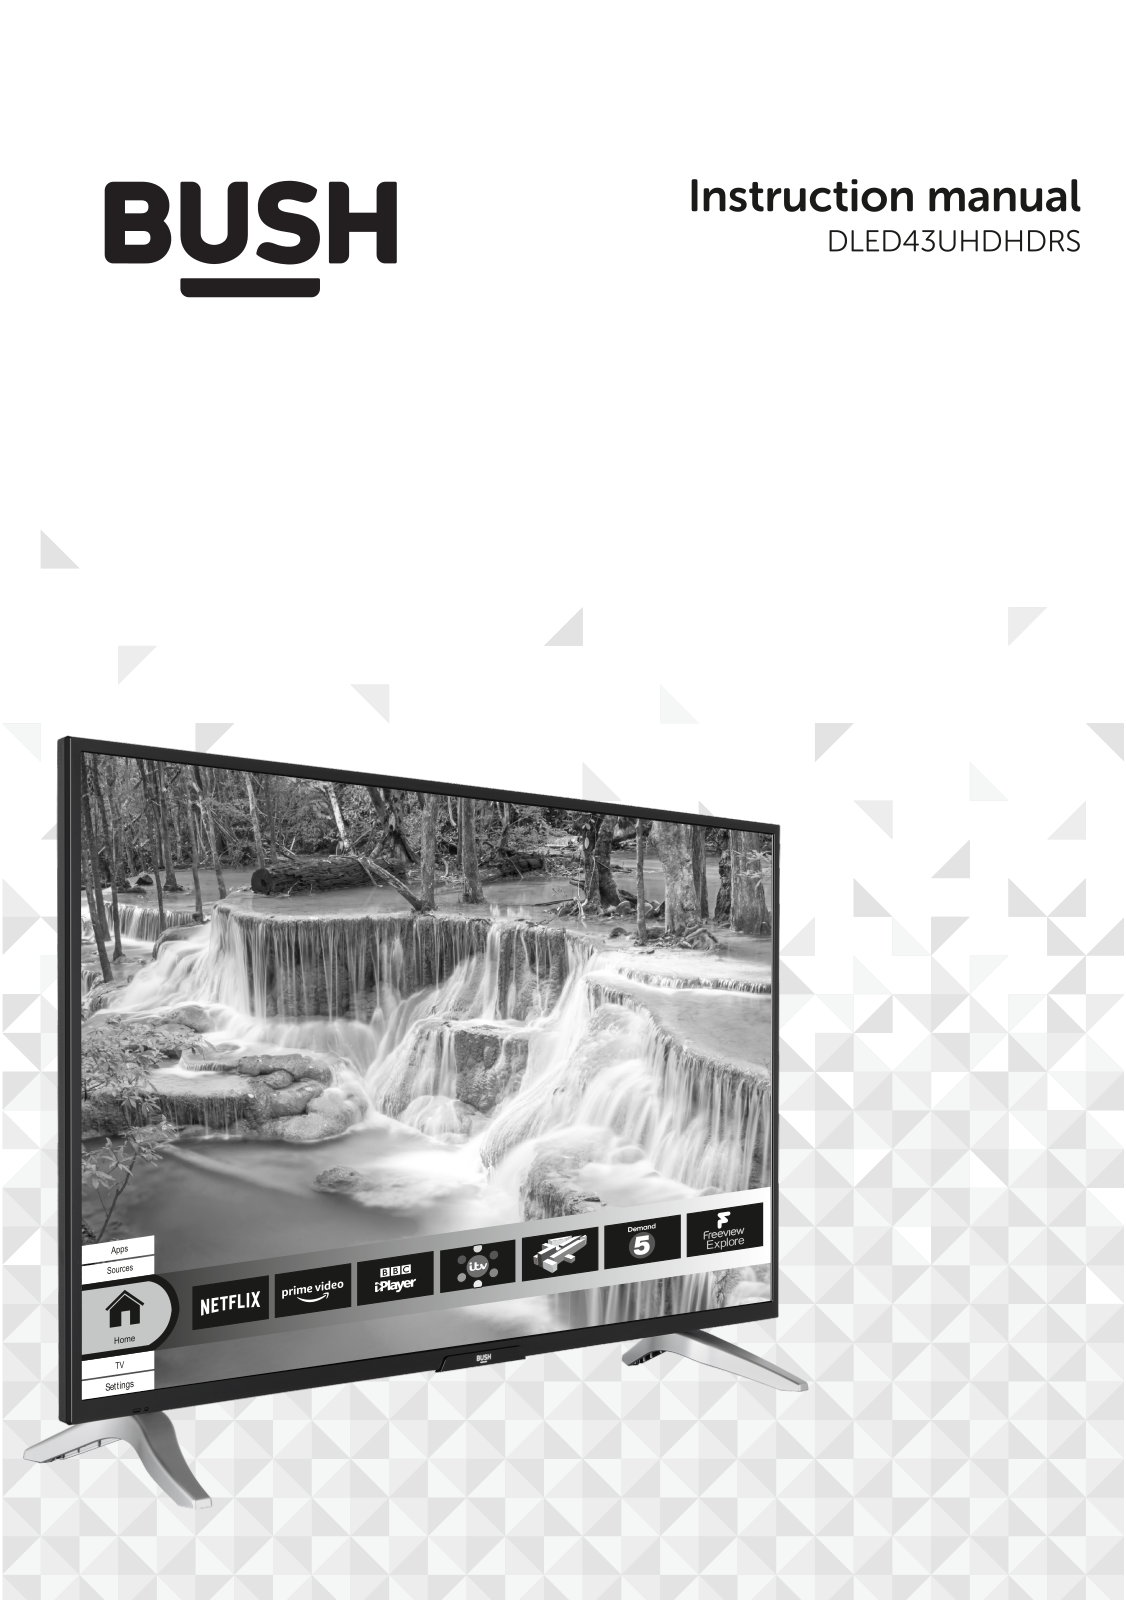 Bush DLED43UHDHDRS Instruction manual